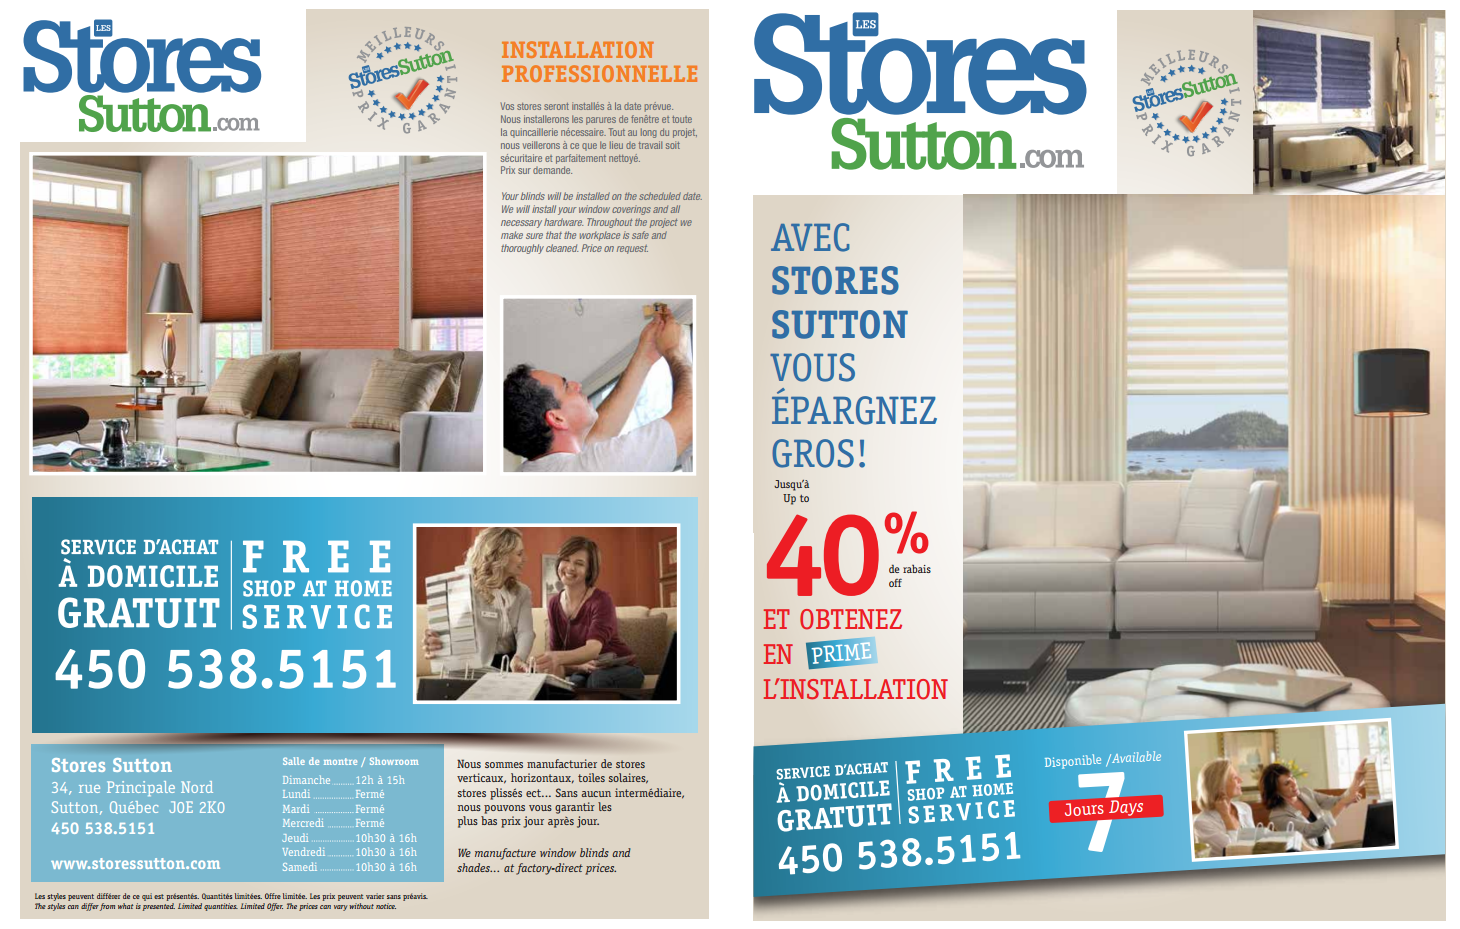 Stores Sutton